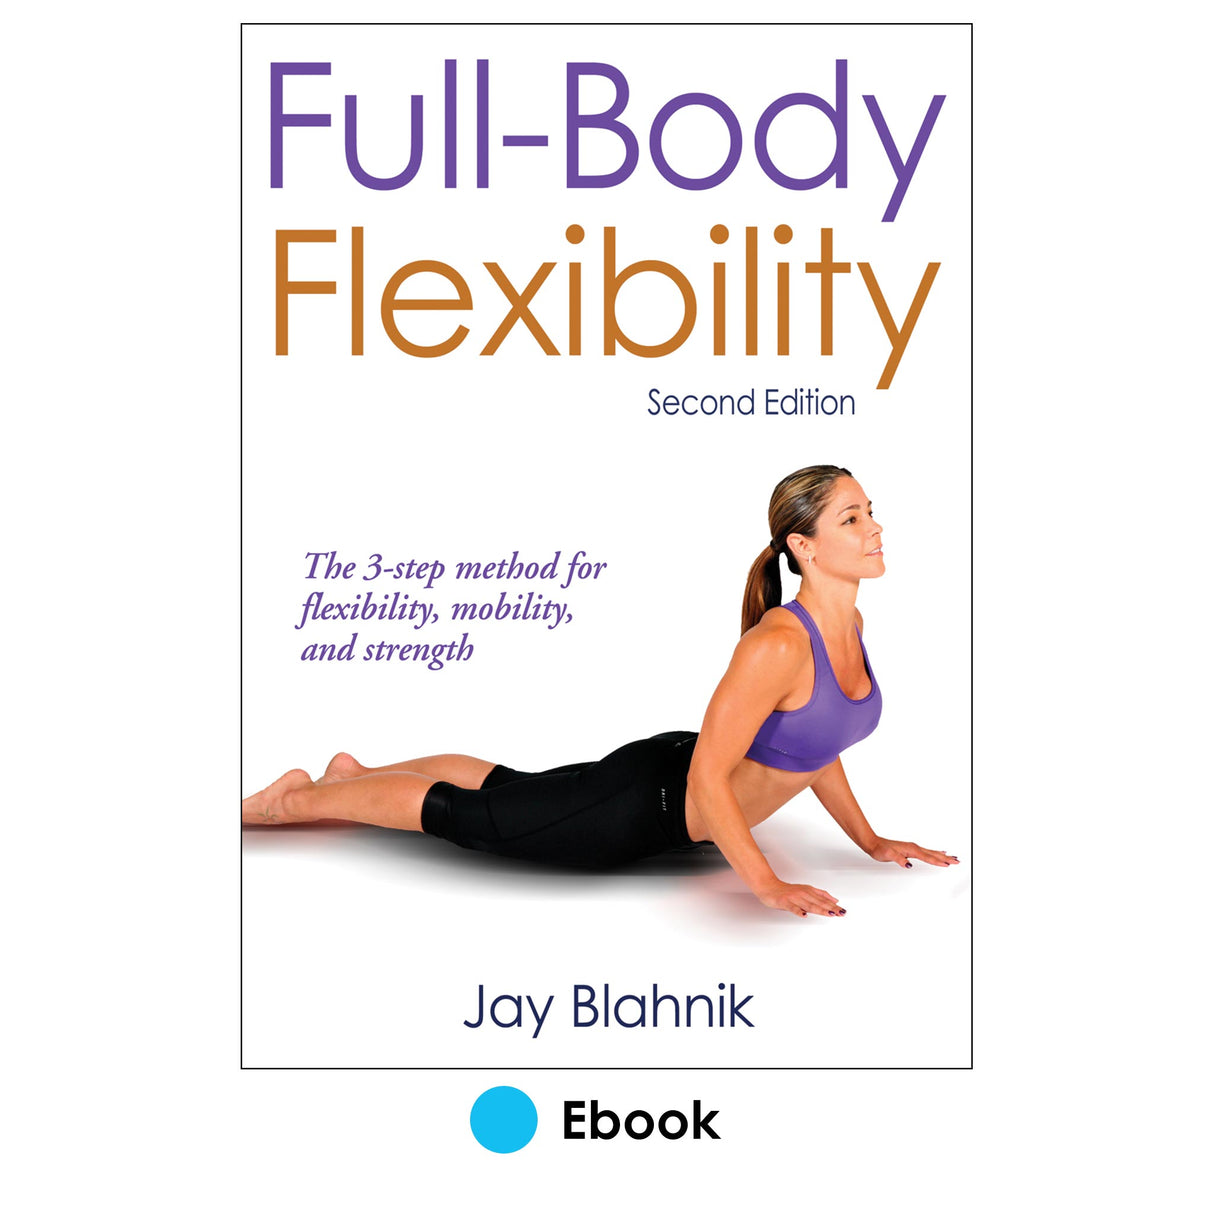 Full-Body Flexibility 2nd Edition PDF